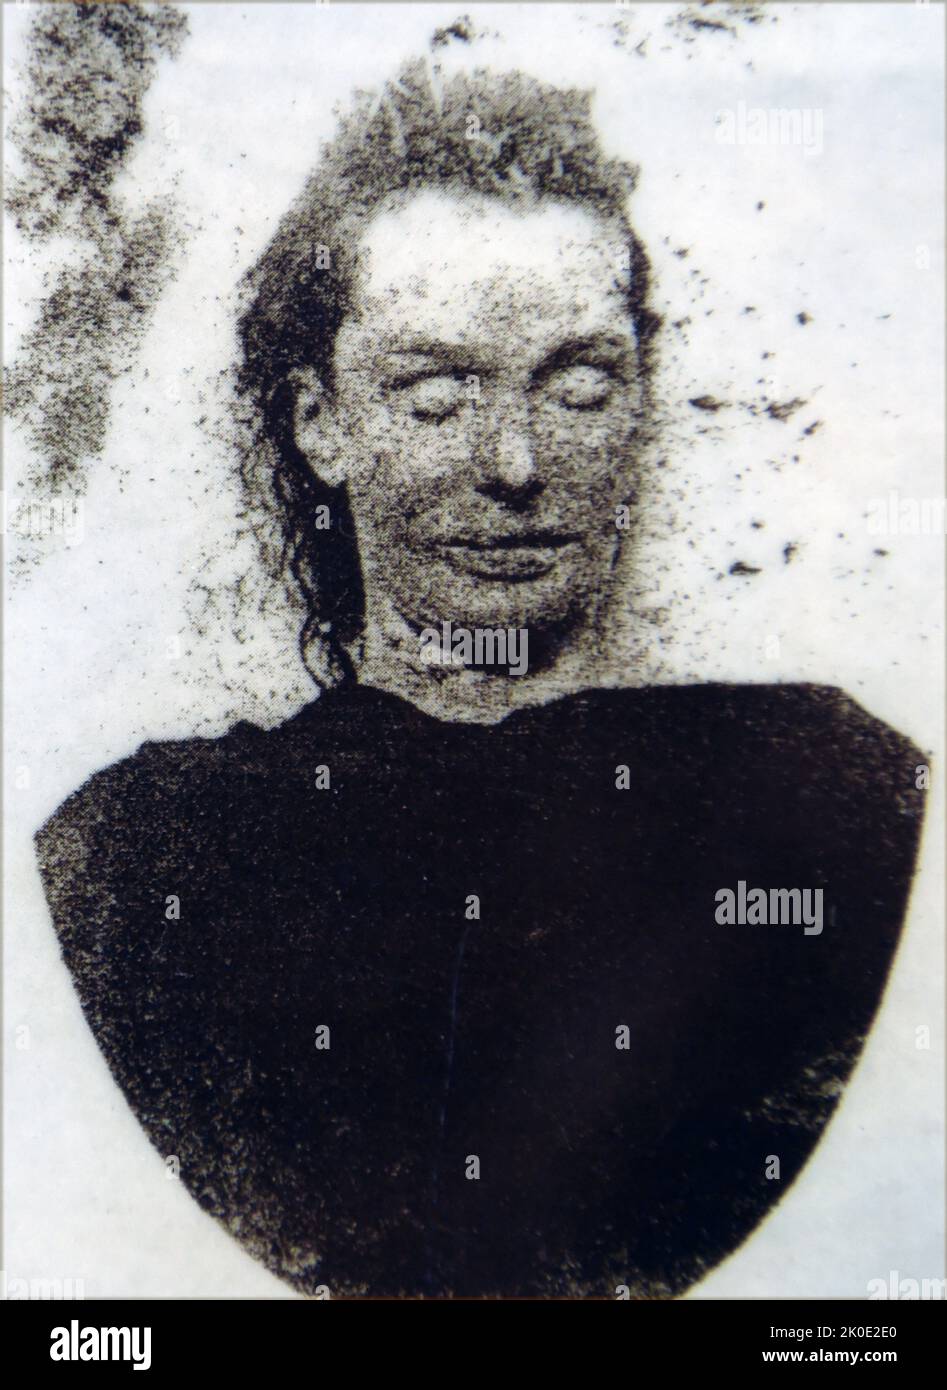 Mary Jane Kelly (1863-1888), largement considérée comme la cinquième et dernière victime de Jack l'Éventreur, qui aurait tué et mutilé un minimum de cinq femmes dans les districts de Whitechapel et de Spitalfields à Londres de la fin août au début novembre 1888. Banque D'Images